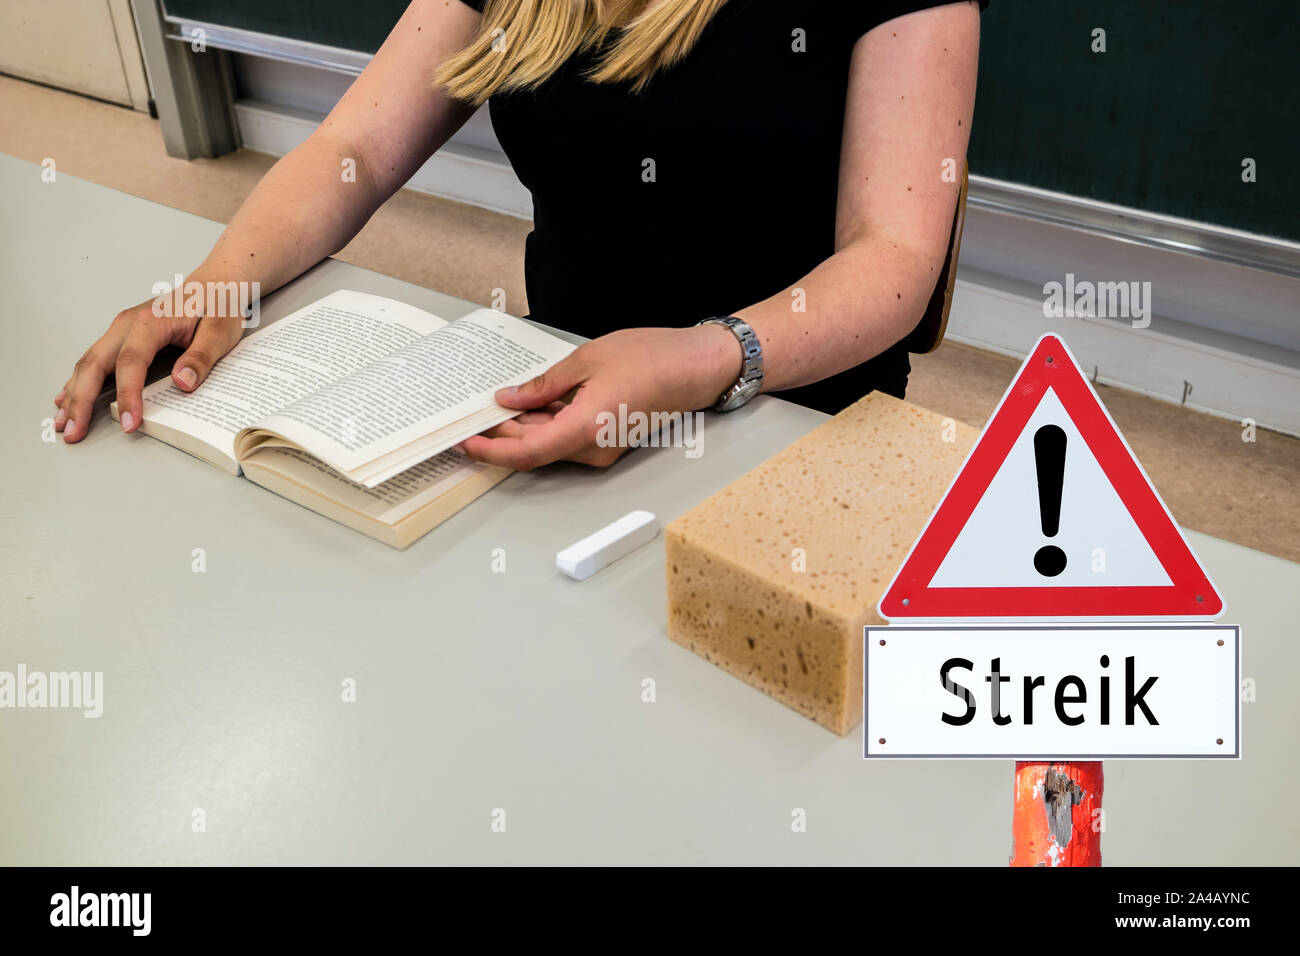 strike warning sign in German Stock Photo